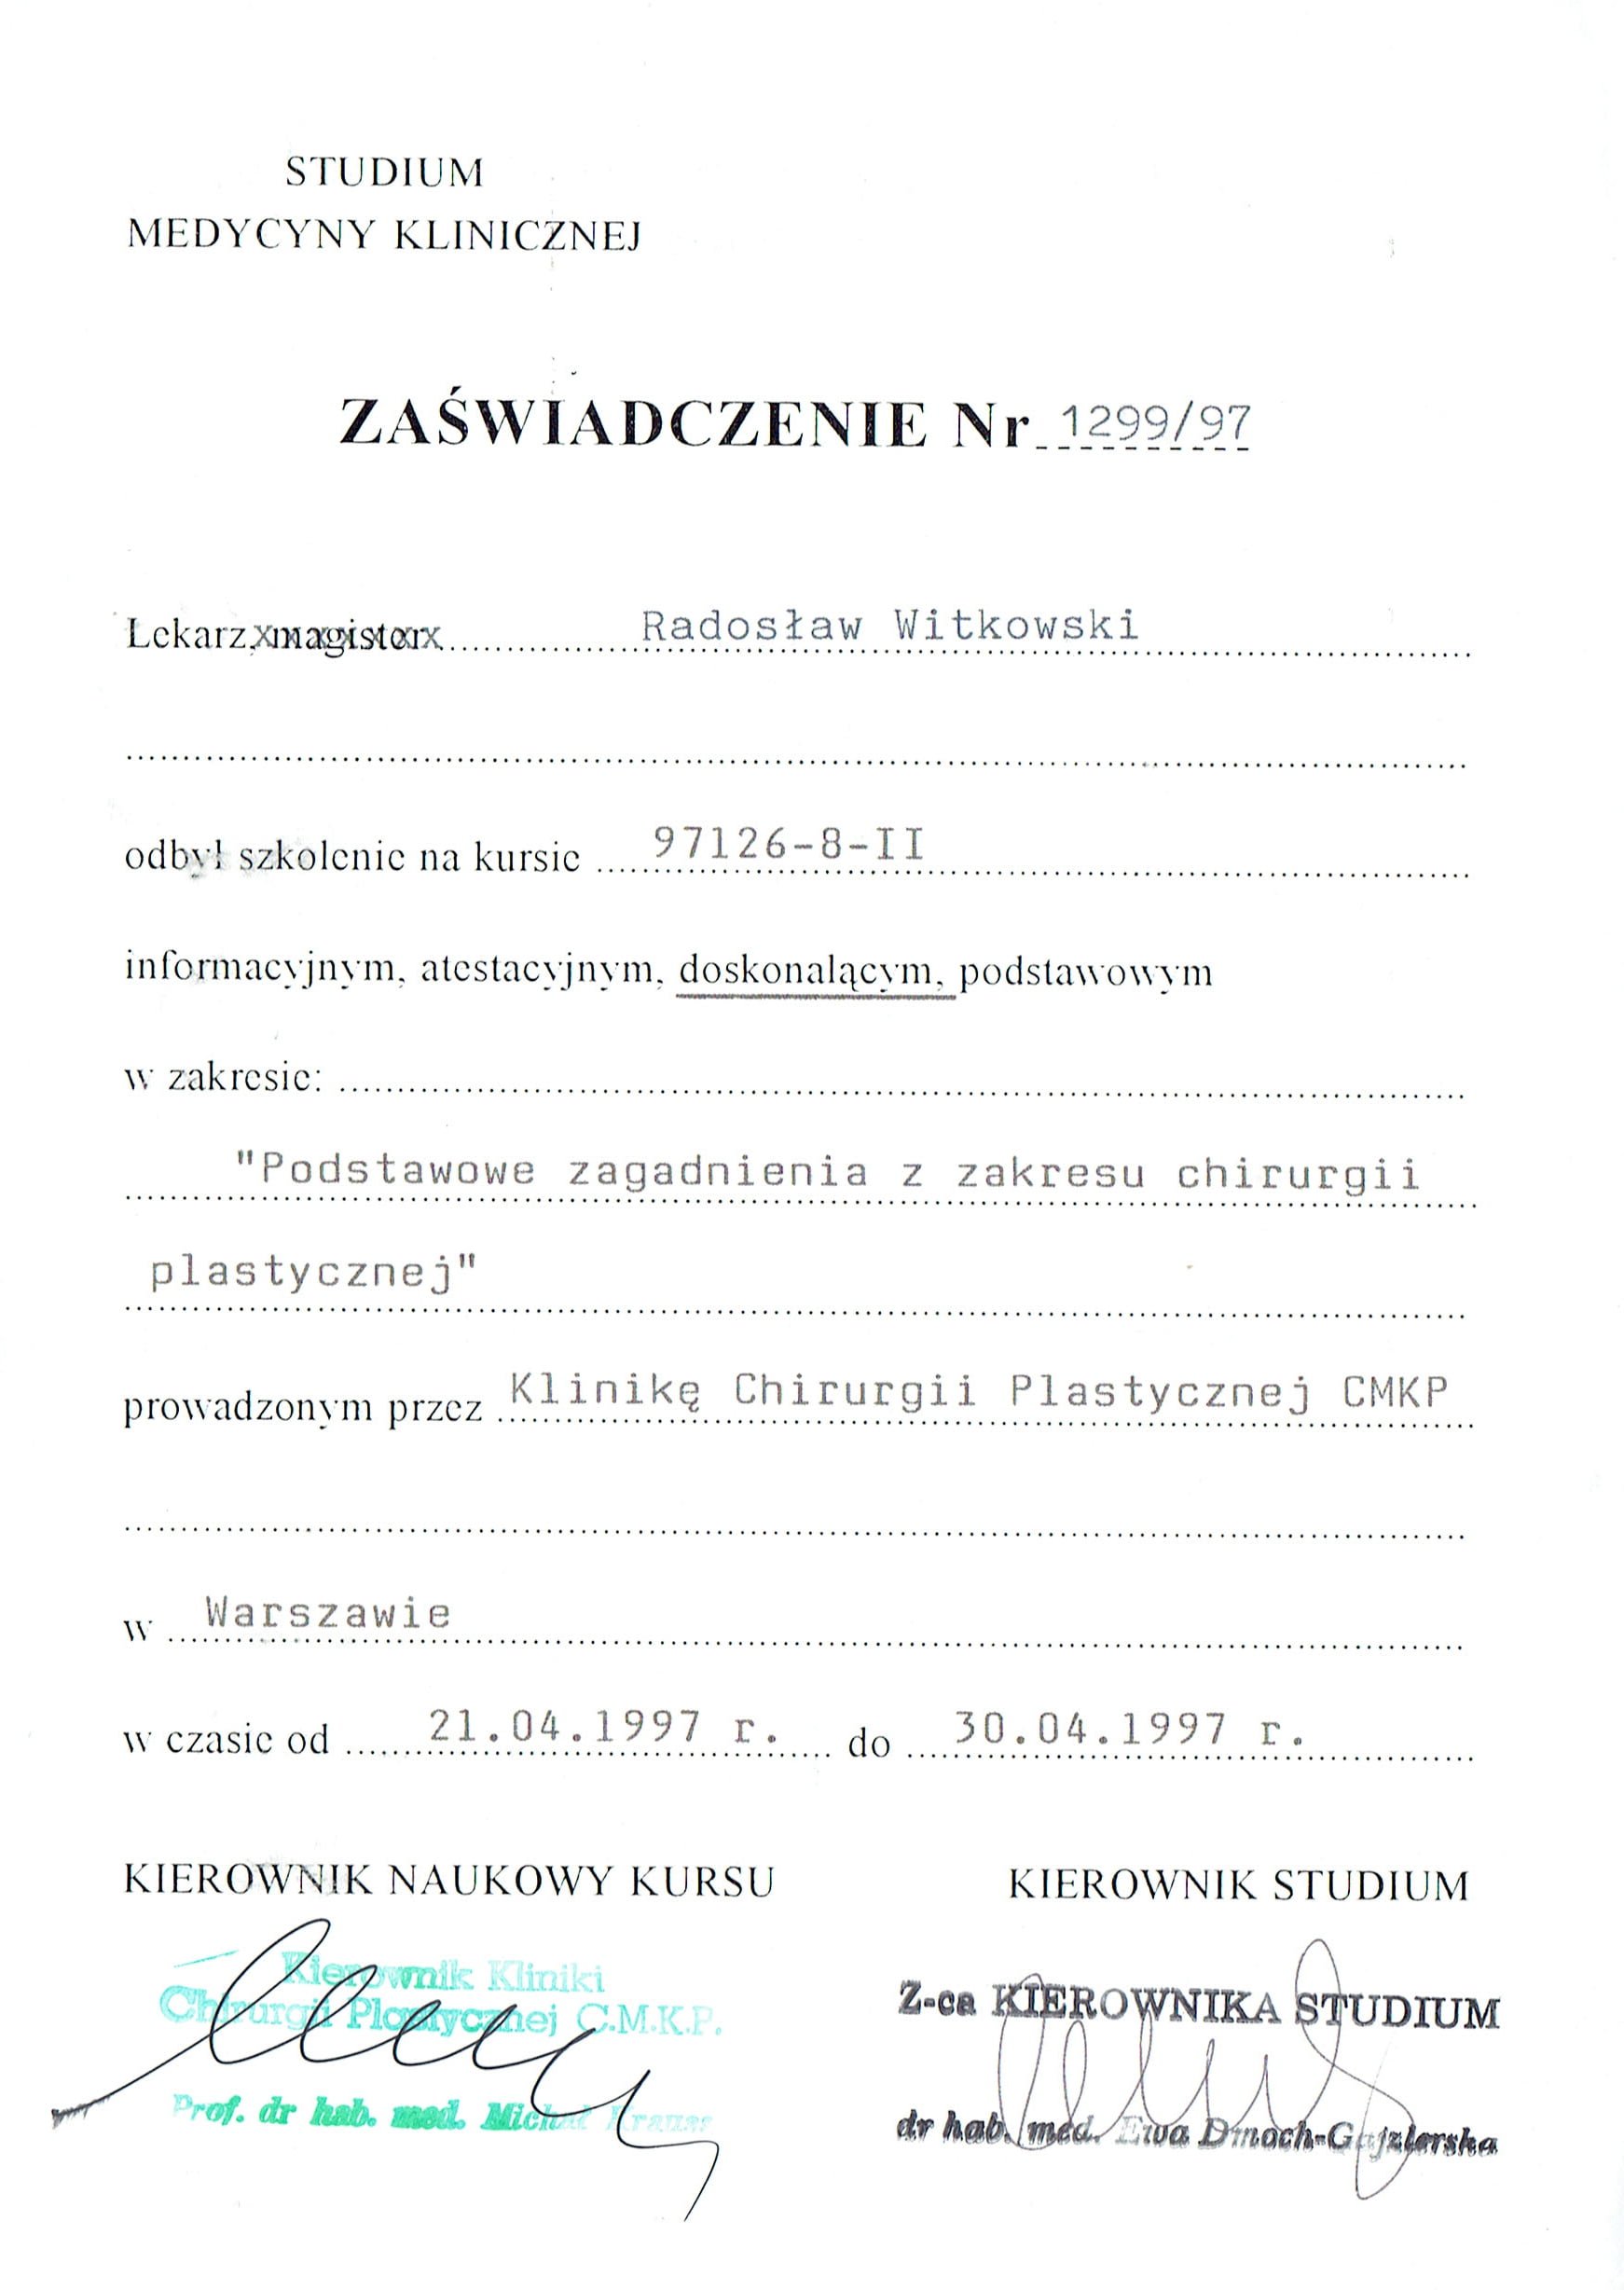 Radosław Witkowski certyfikat 15